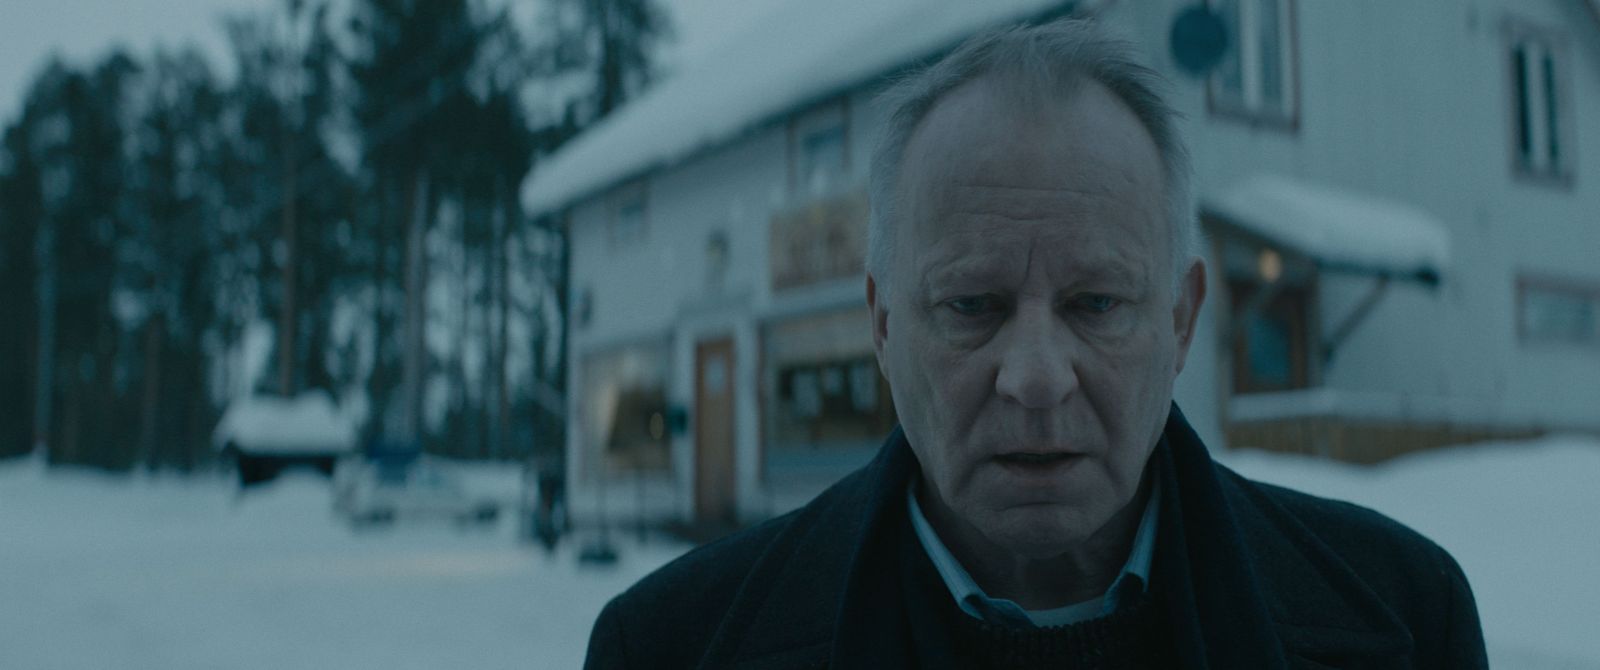 Přehlídka severských filmů  SCANDI 2020 bude ve znamení žen